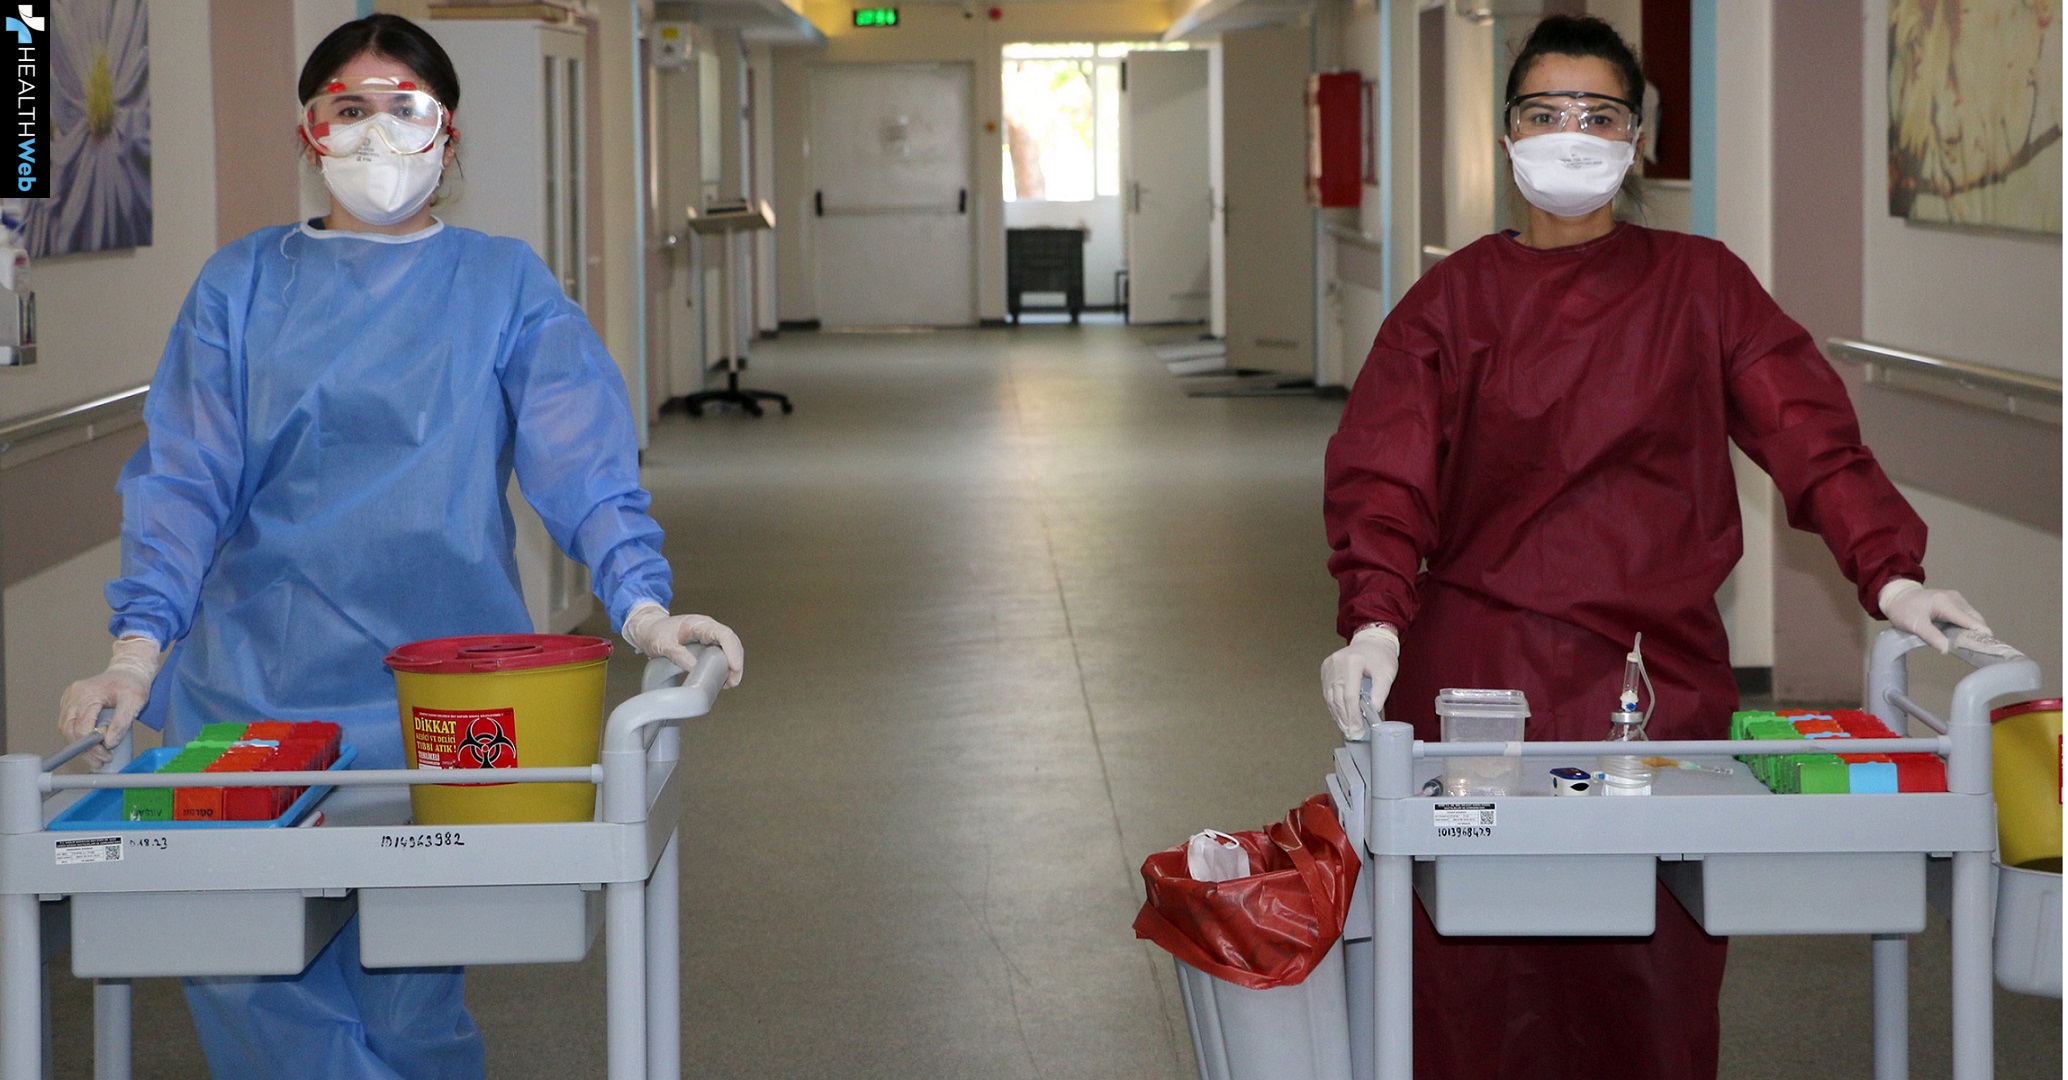 Πρόσληψη νοσηλευτών: Σε ΦΕΚ η προκήρυξη για την πρόσληψη 3.720 νοσηλευτών